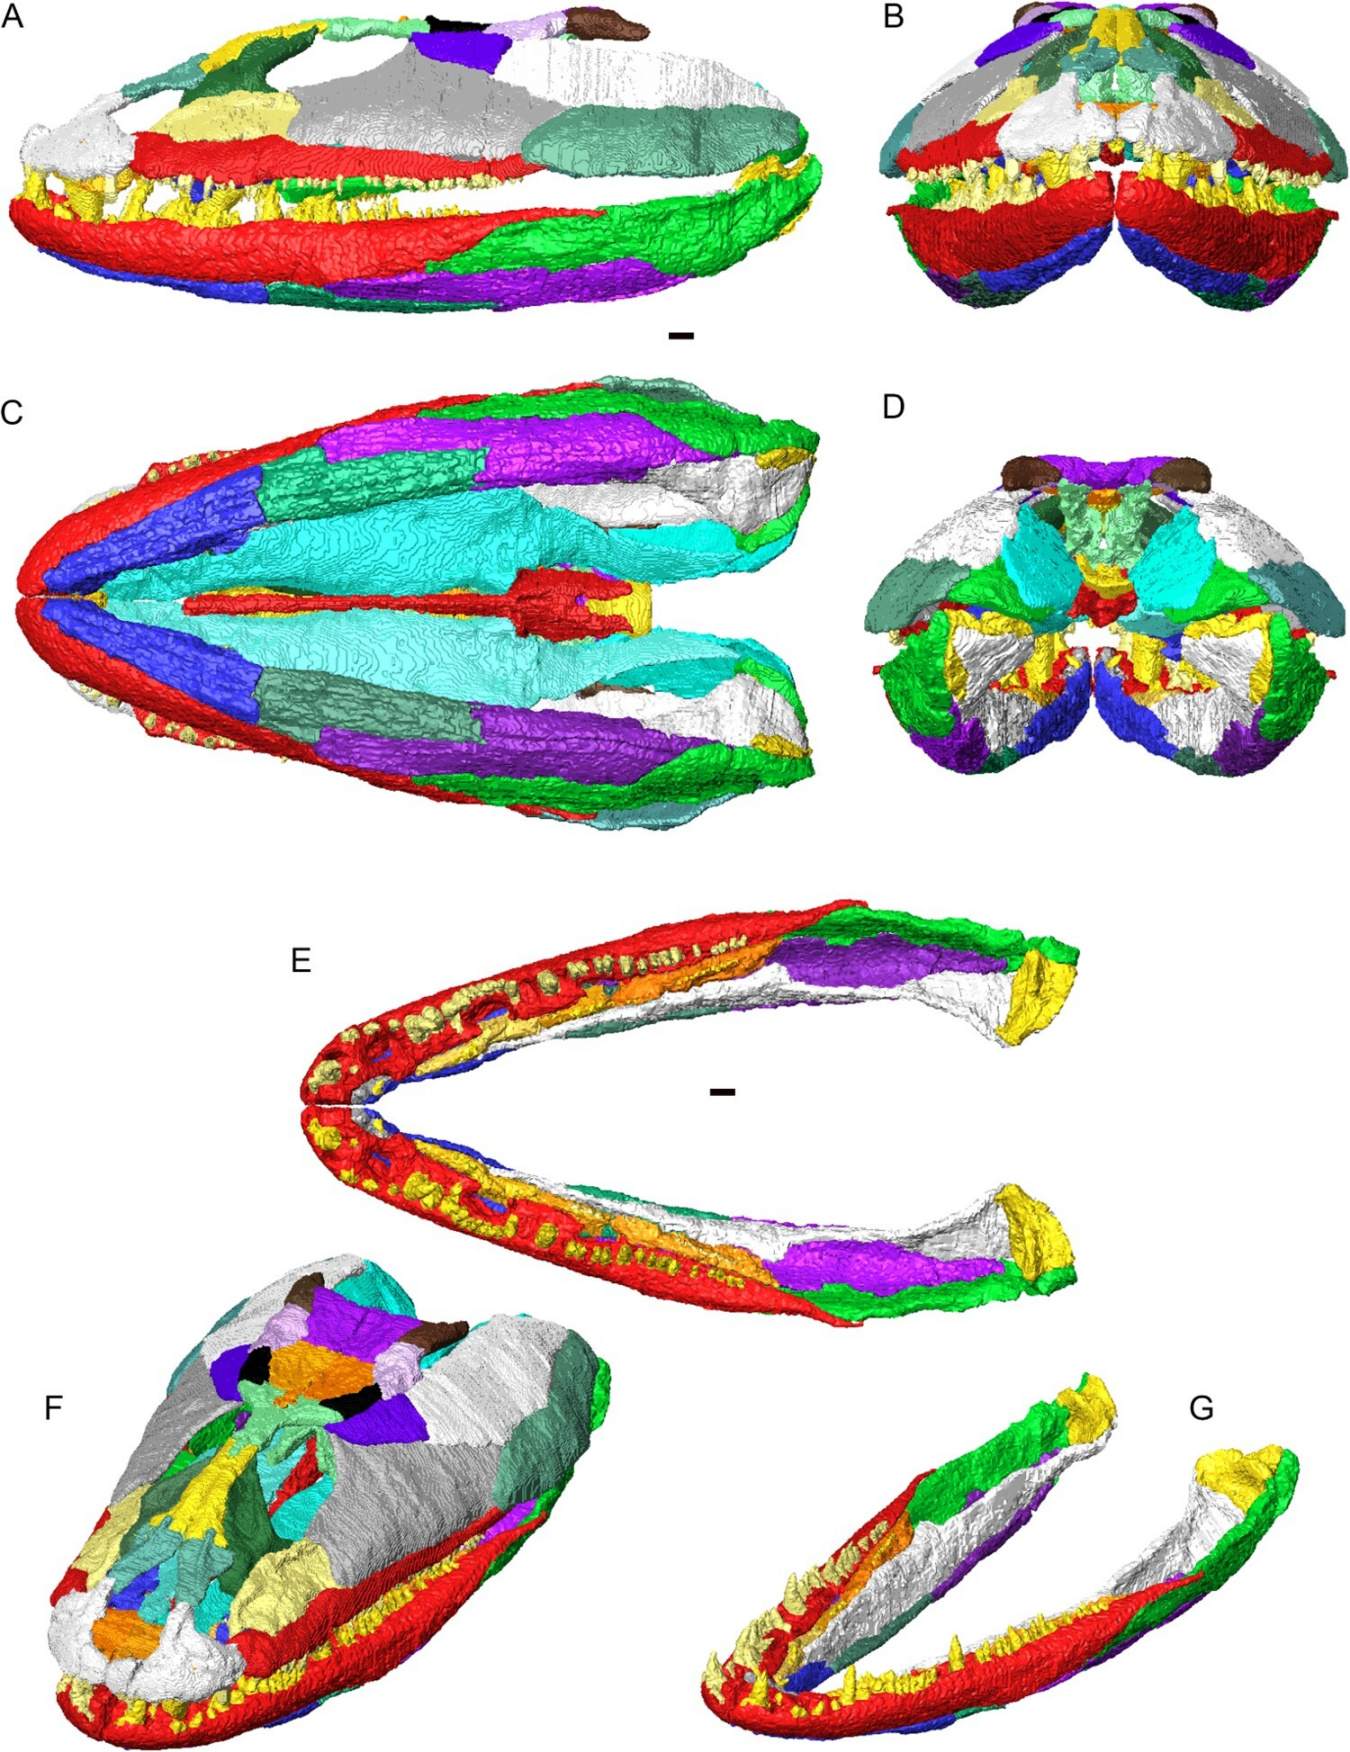 Artikulyatsiyada Crassigyrinus scoticus bosh suyagi va pastki jag'larini 3D rekonstruksiya qilish. Turli xil ranglarda ko'rsatilgan individual suyaklar. A, chap lateral ko'rinish; B, oldingi ko'rinish; C, ventral ko'rinish; D, orqa ko'rinish; E, dorsal ko'rinishda bo'g'imli pastki jag'lar (kranium yo'q); F, dorsolateral oblique ko'rinishida bosh suyagi va pastki jag'; G, dorsolateral oblique ko'rinishida bo'g'imli pastki jag'lar.